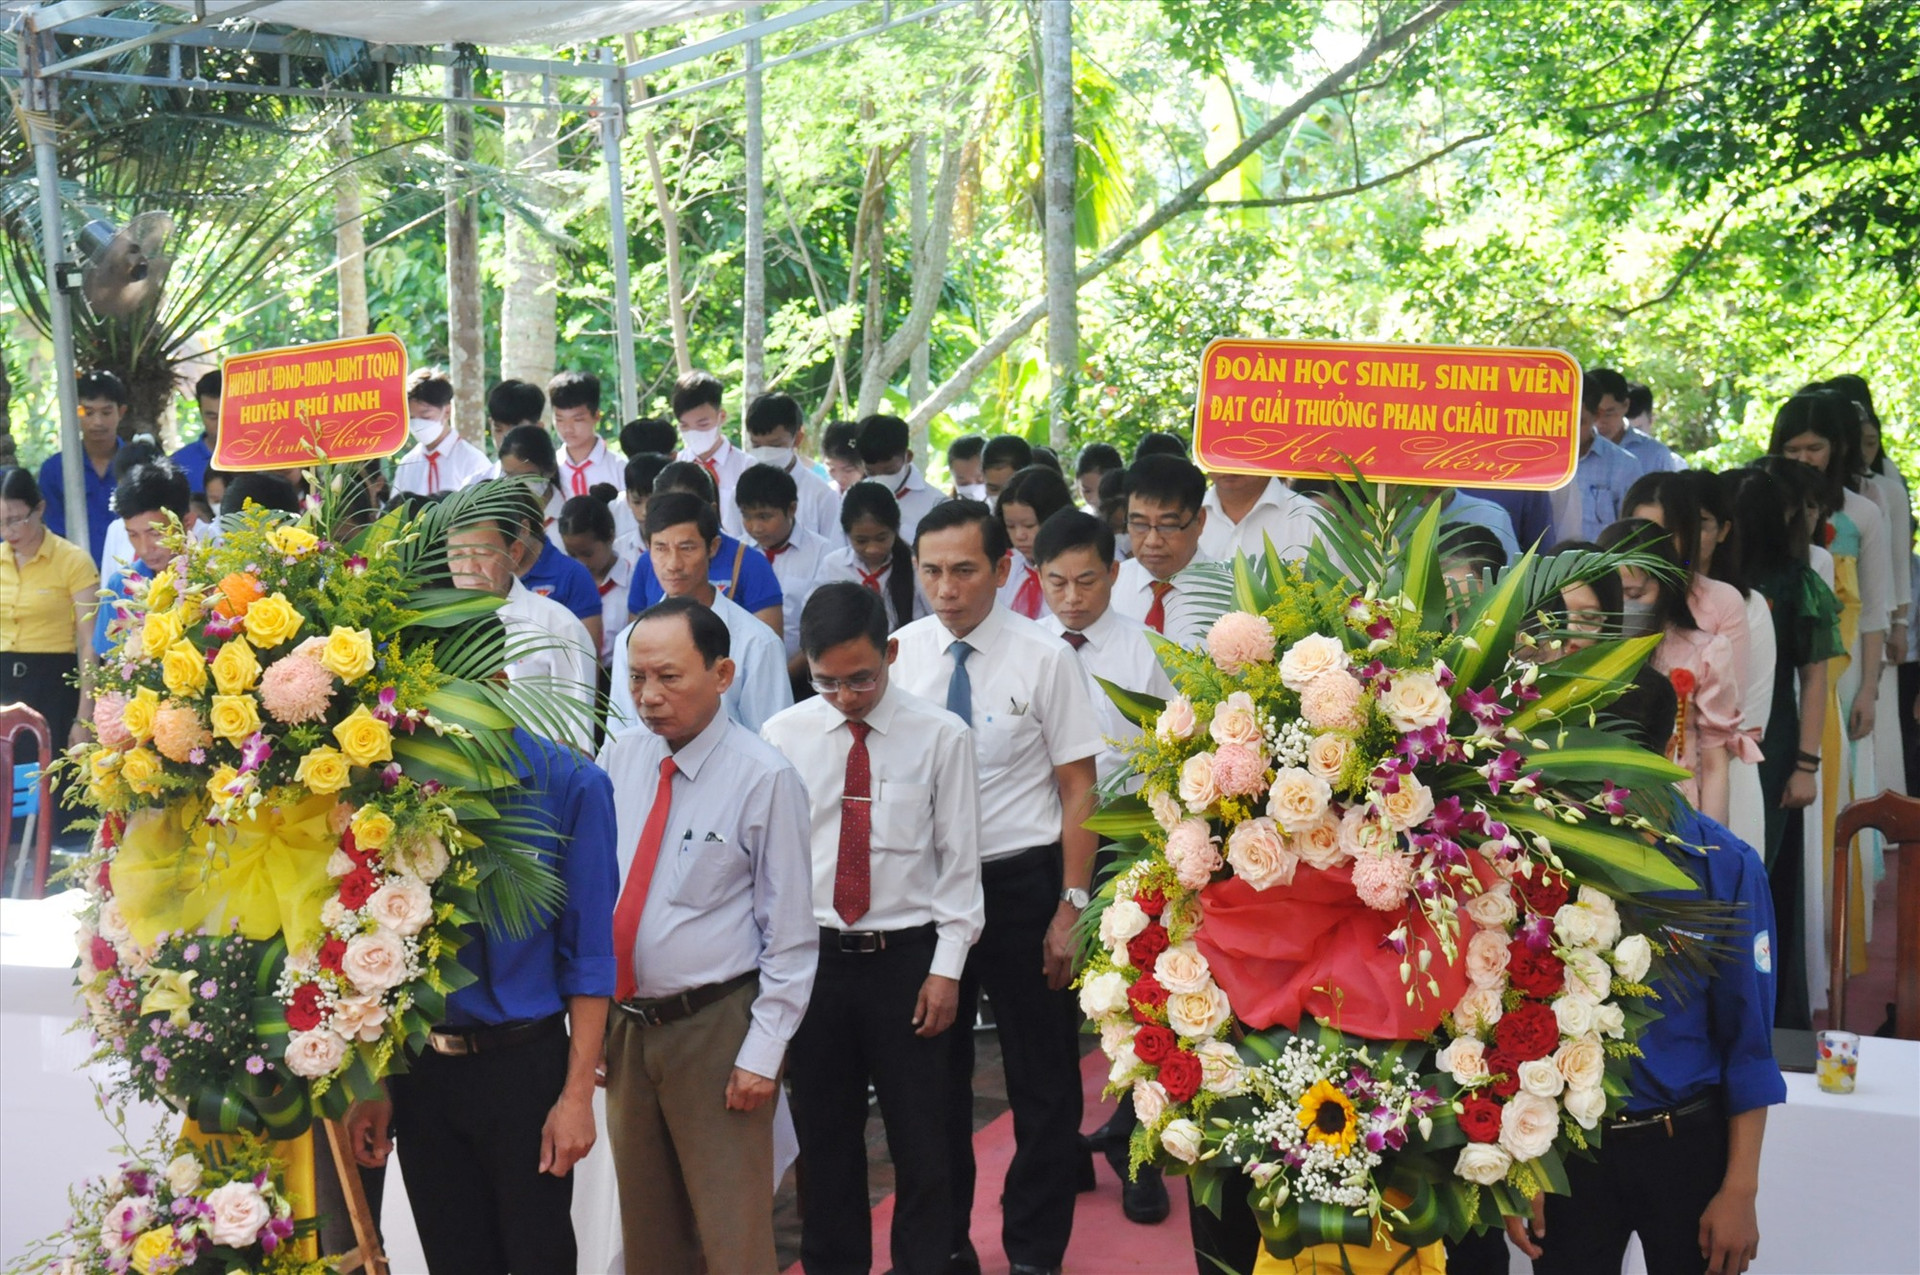 Đoàn đại biểu lãnh đạo huyện Phú Ninh và học sinh, sinh viên thực hiện nghi thức dâng hoa, tưởng niệm Nhà yêu nước Phan Châu Trinh. Ảnh: N.Đ